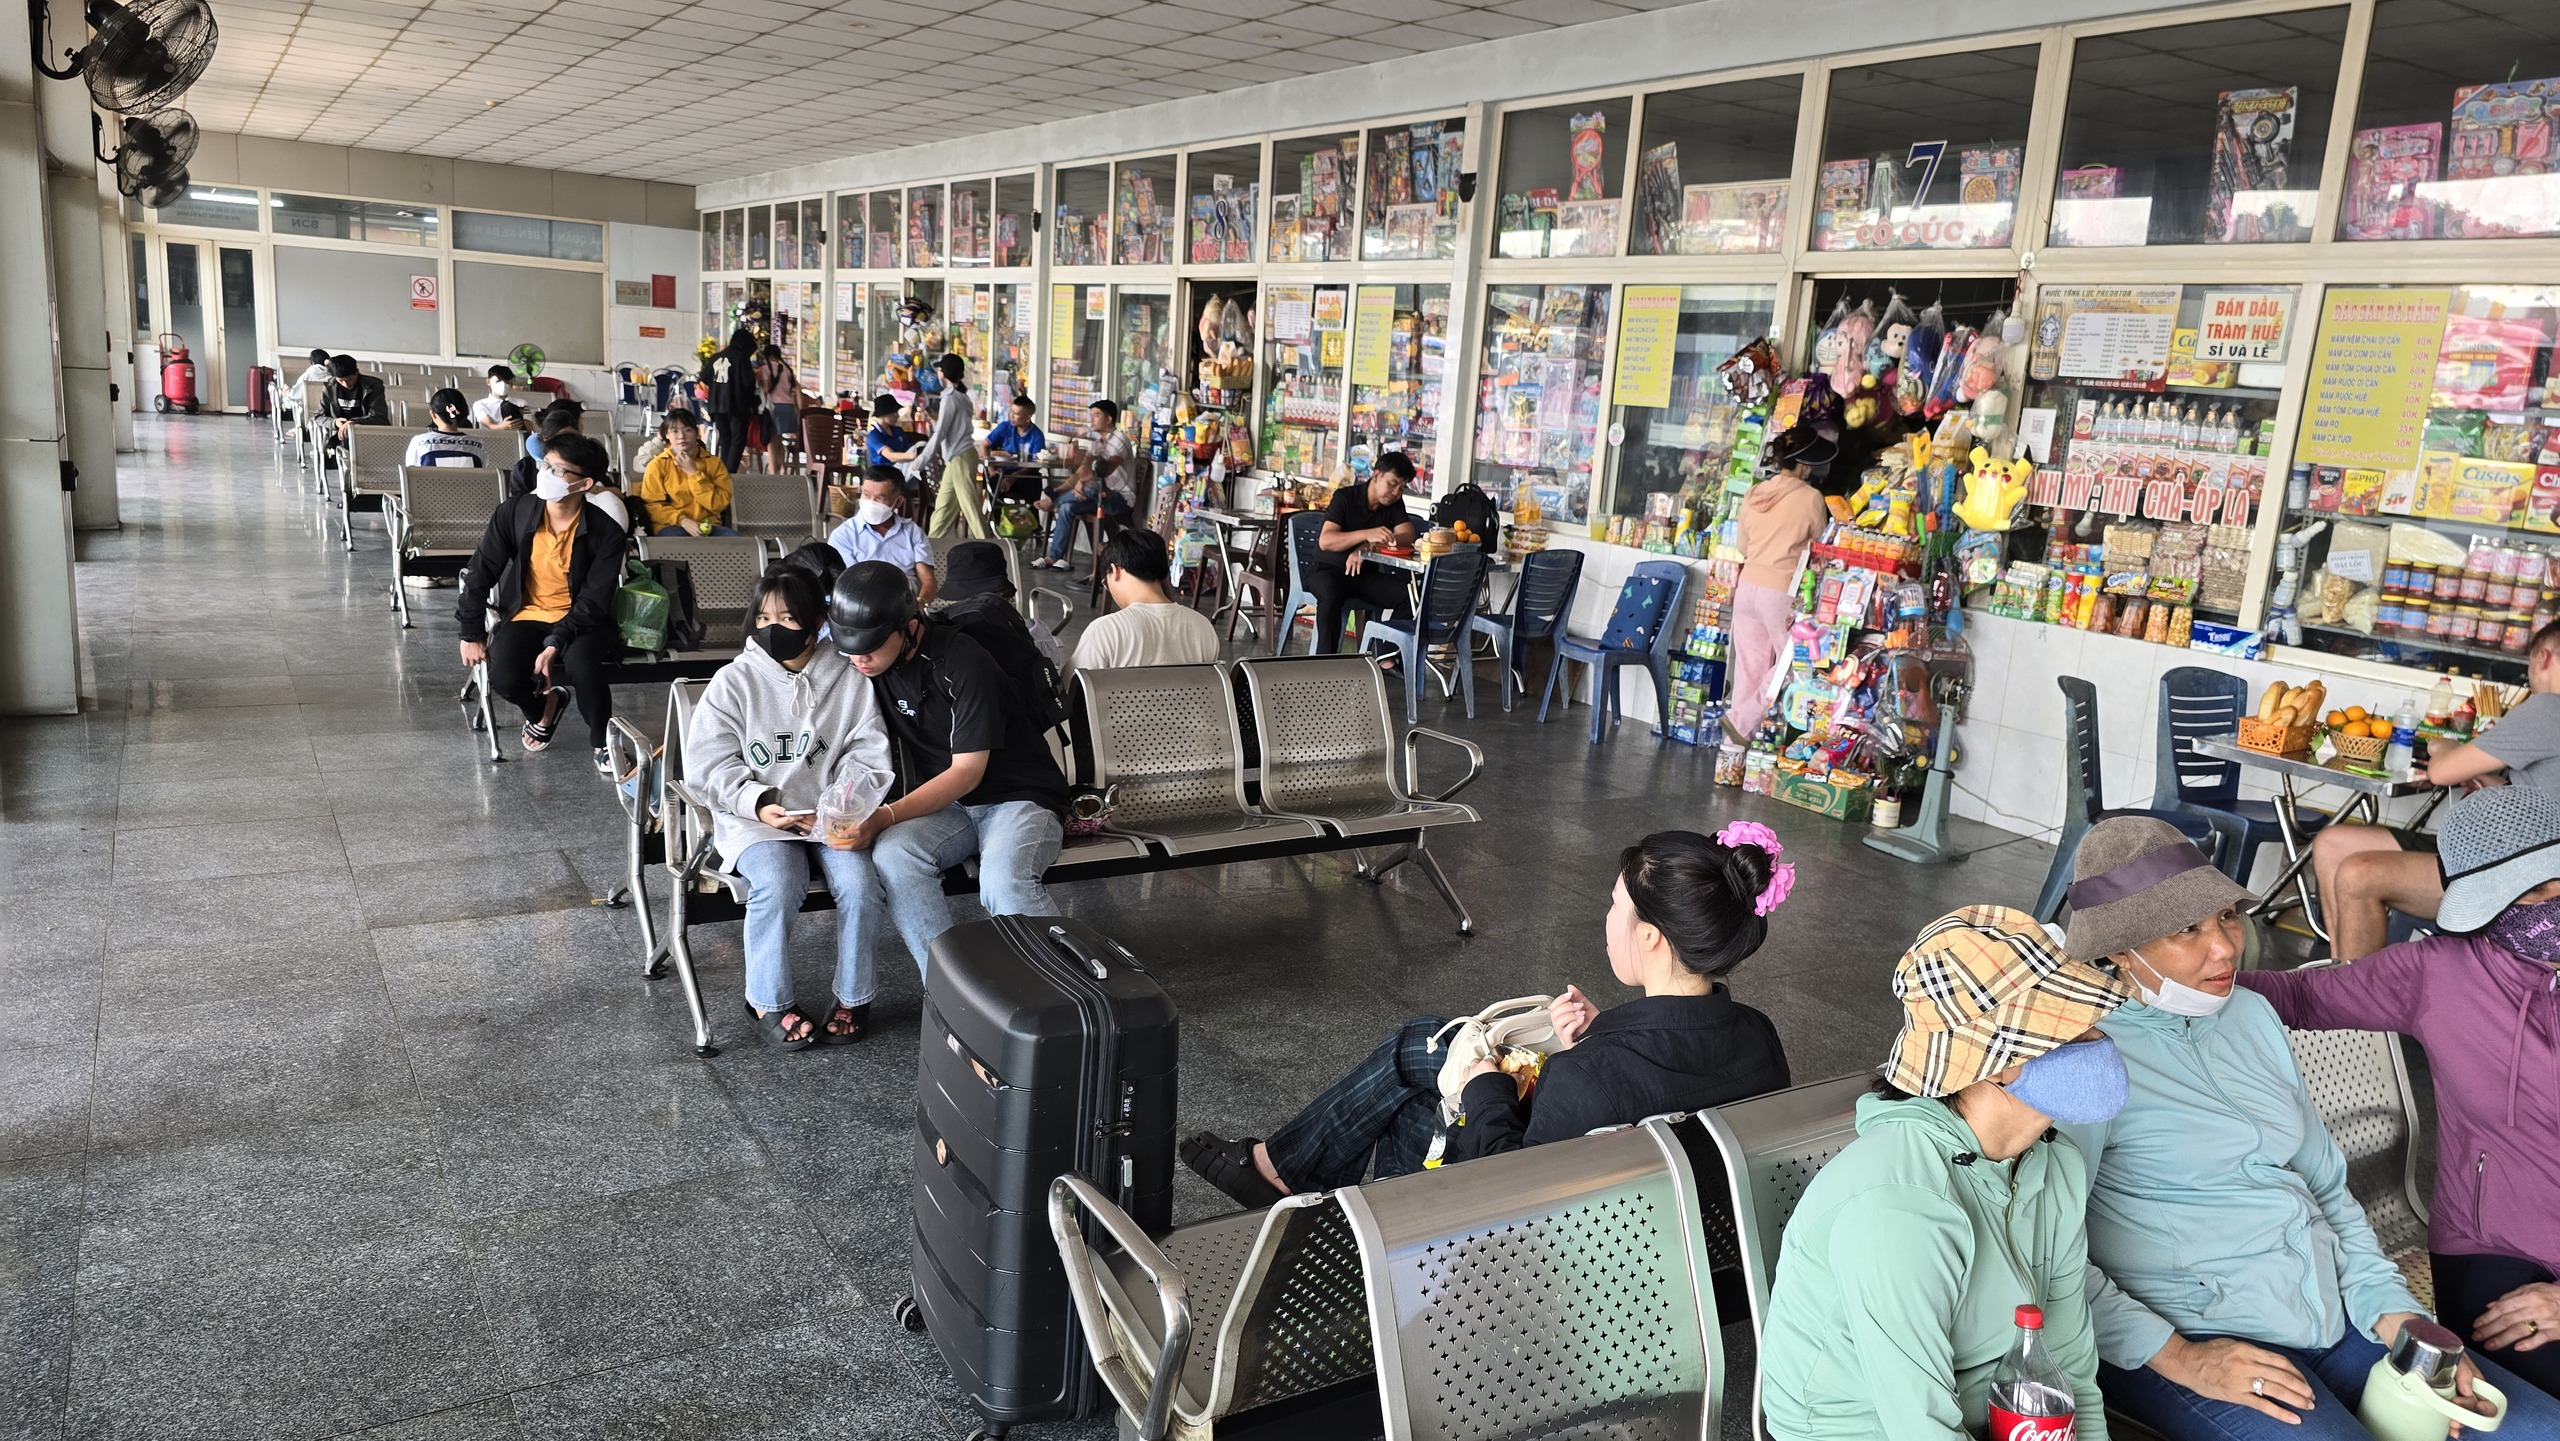 Khung cảnh lạ ở sân bay Tân Sơn Nhất trong ngày đầu nghỉ lễ 30-4, 1-5- Ảnh 7.